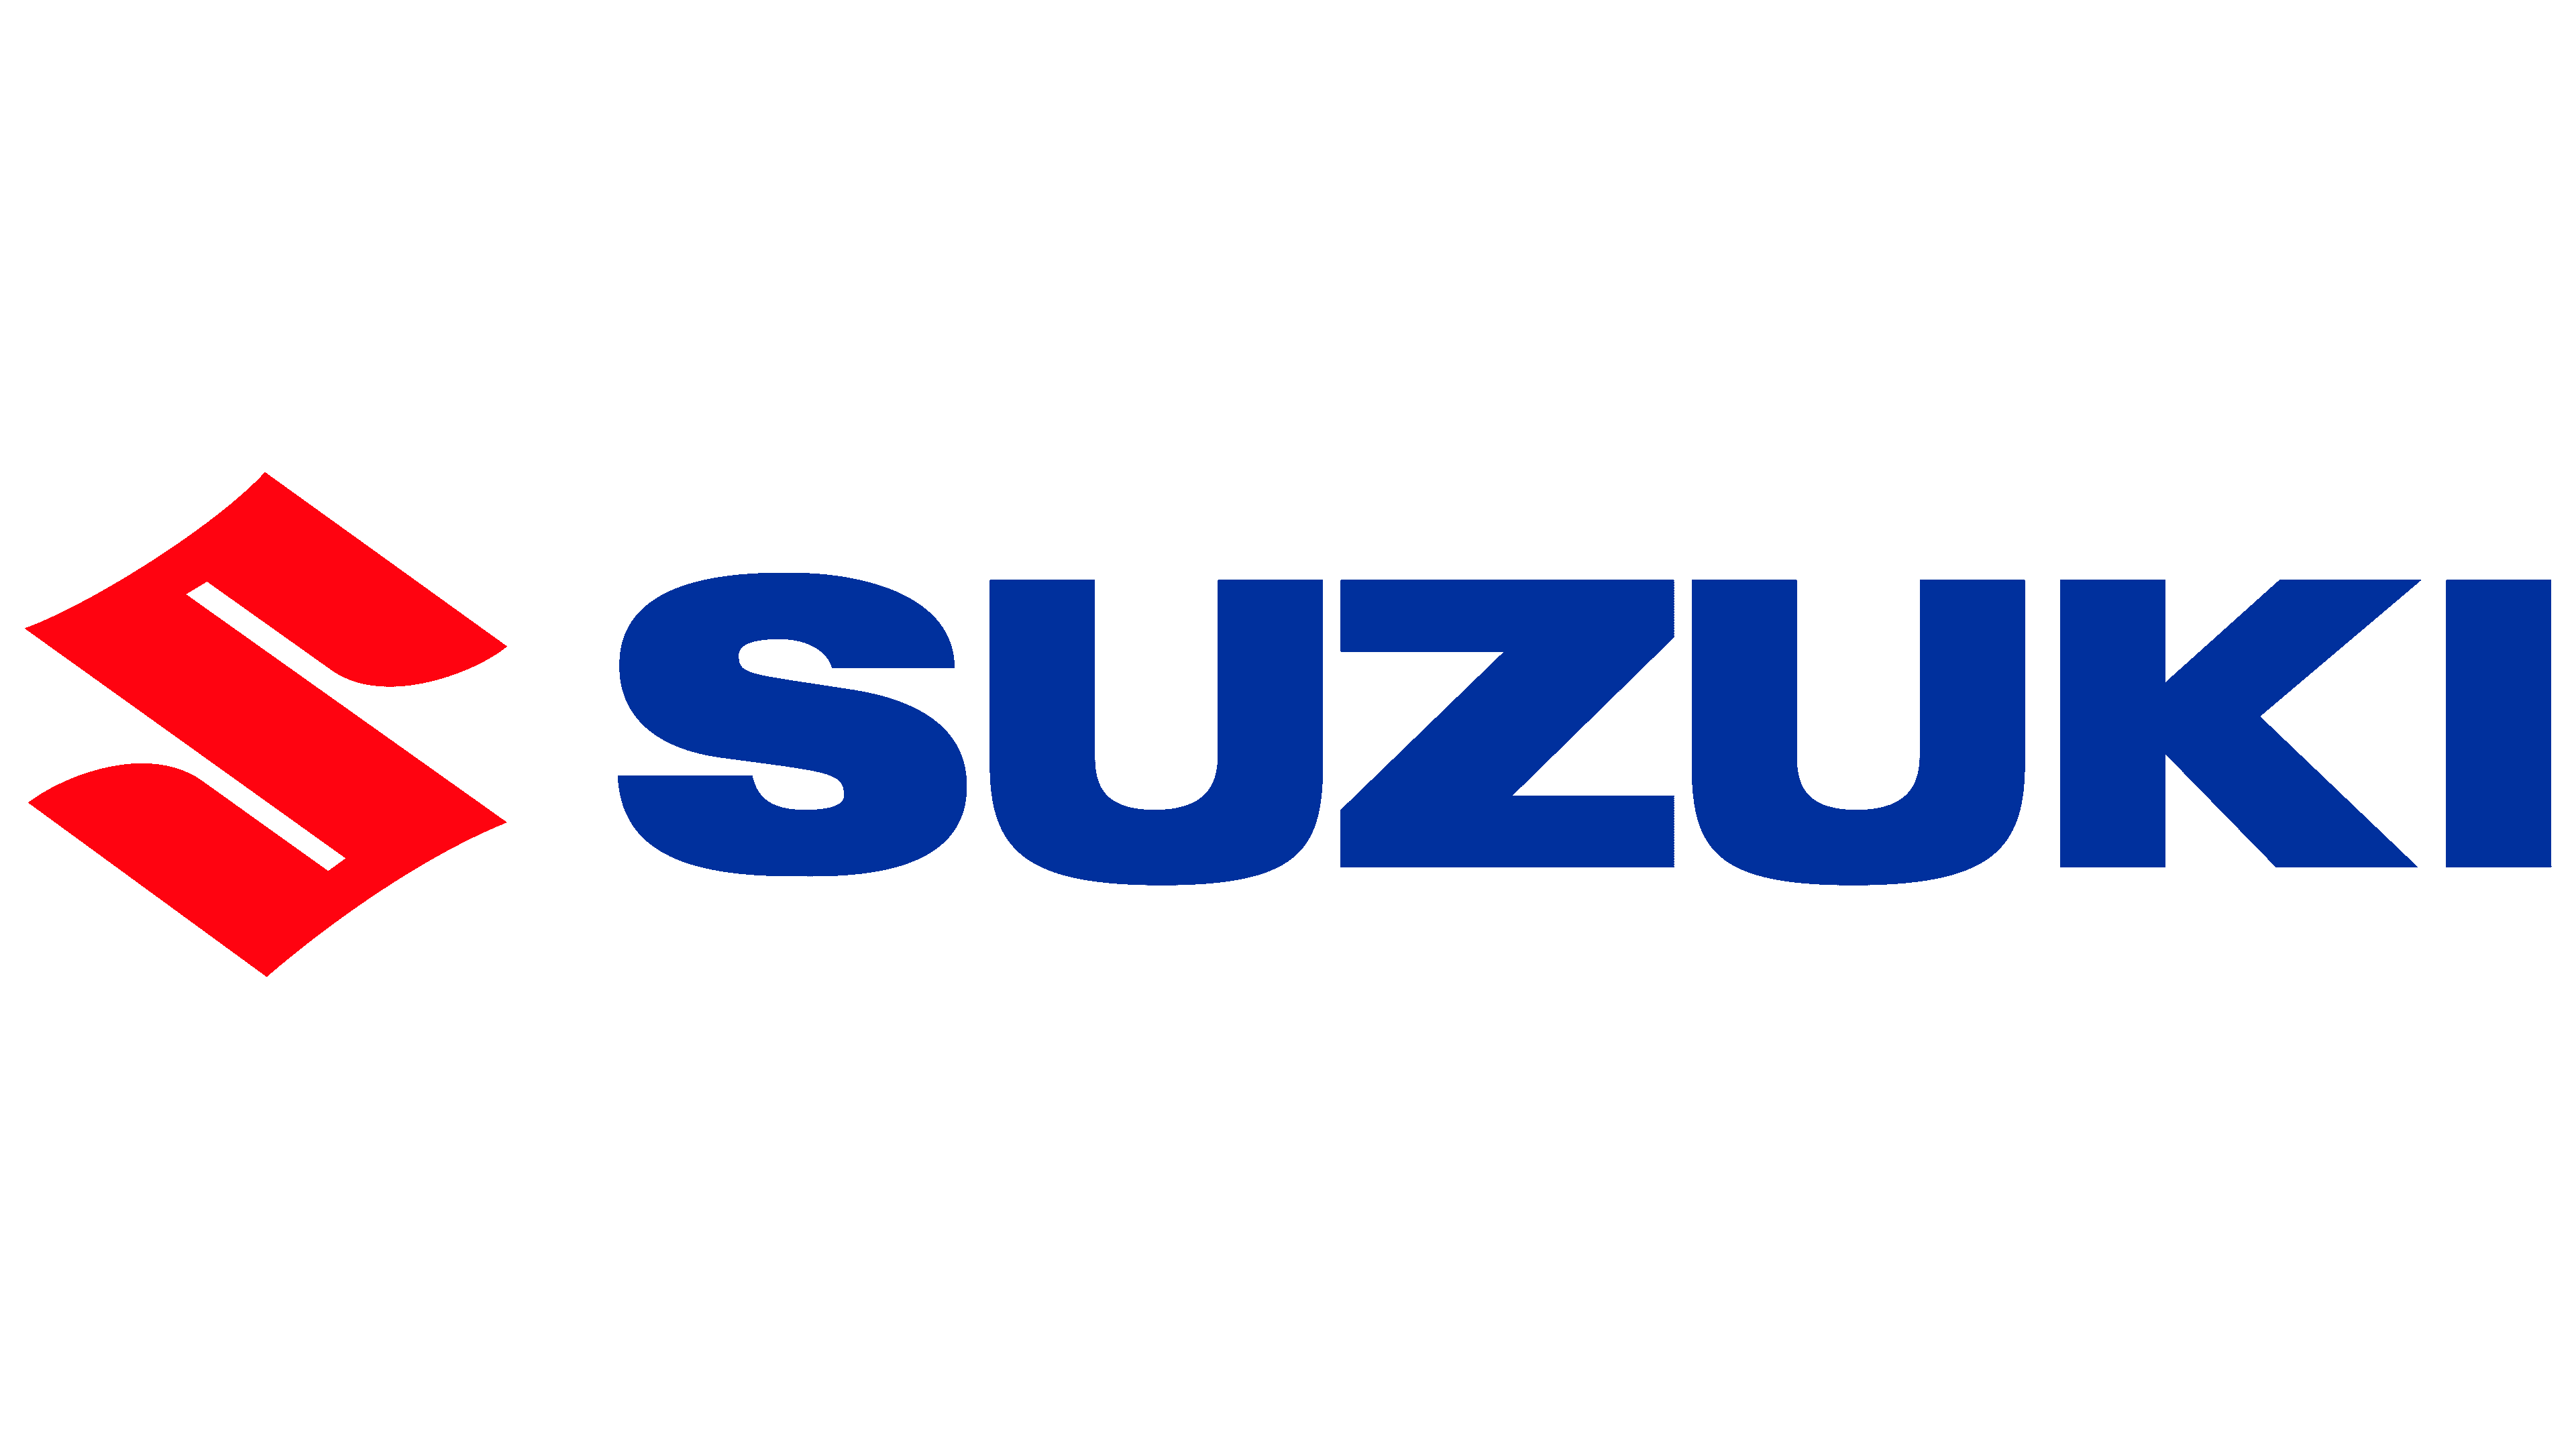 Suzuki Logo Free DXF File Free Download - DXF Patterns